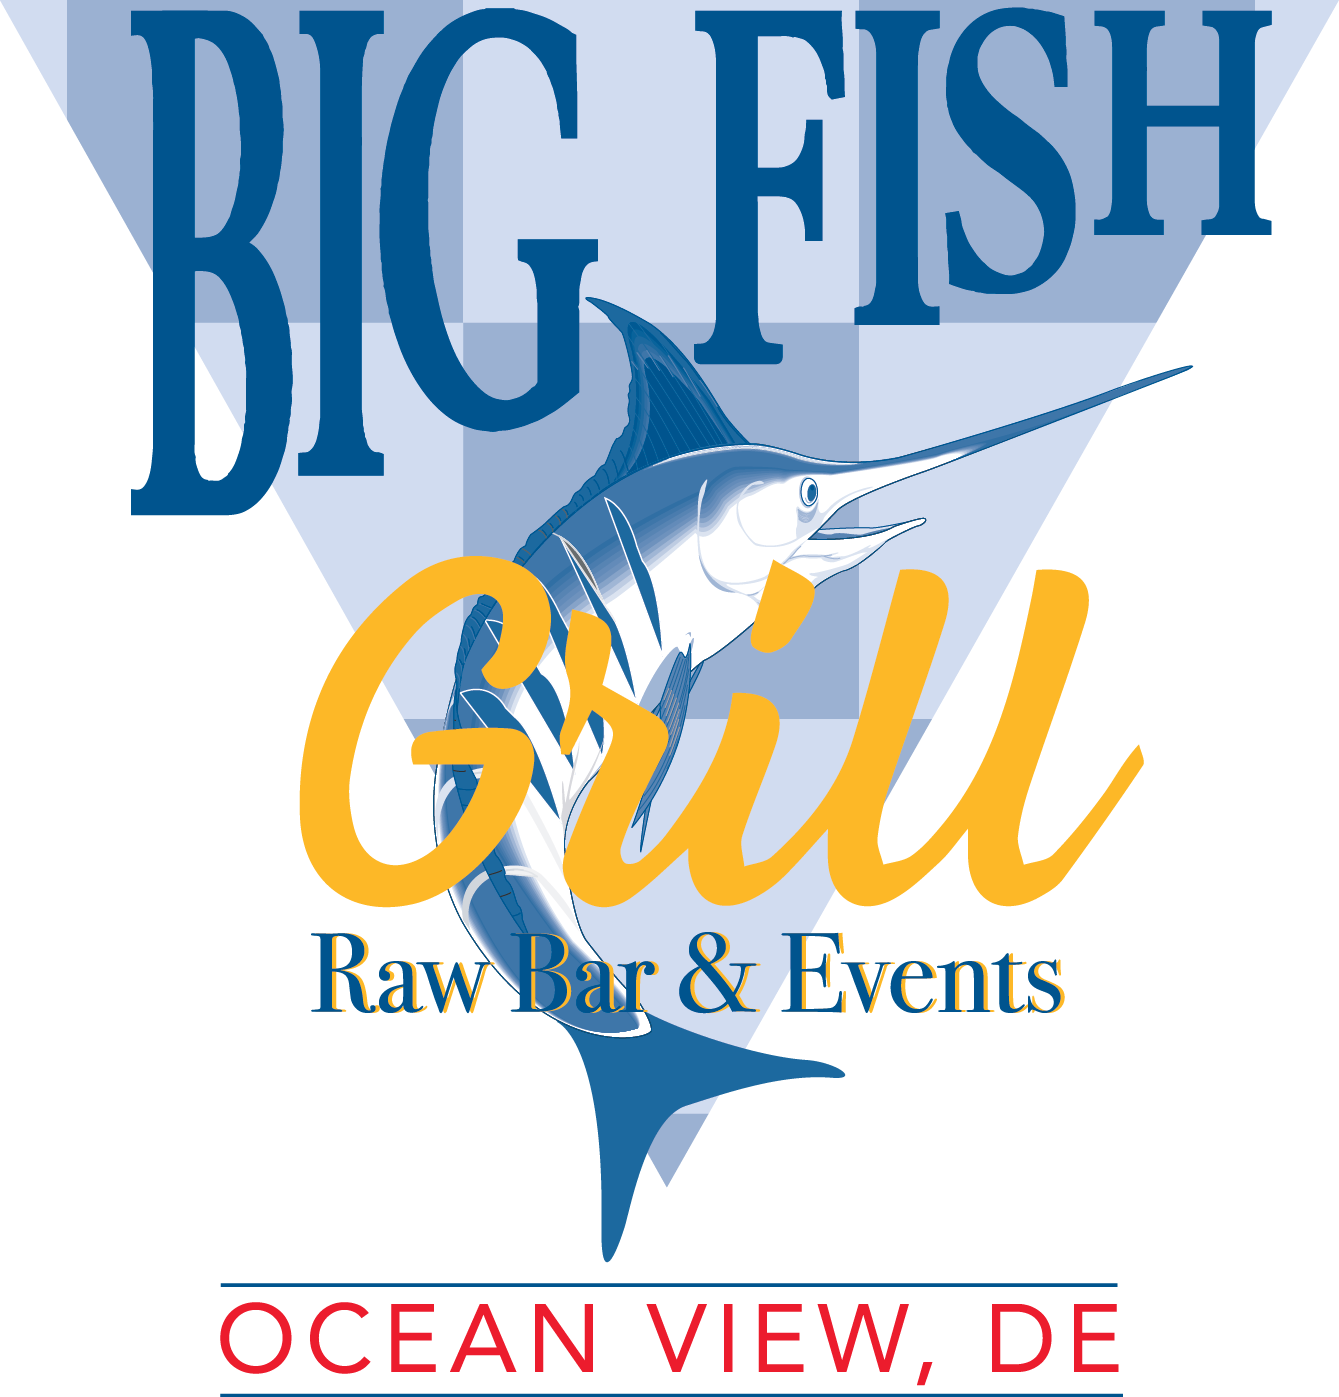 Big Fish Grill Ocean View - Ocean View (1339x1397)